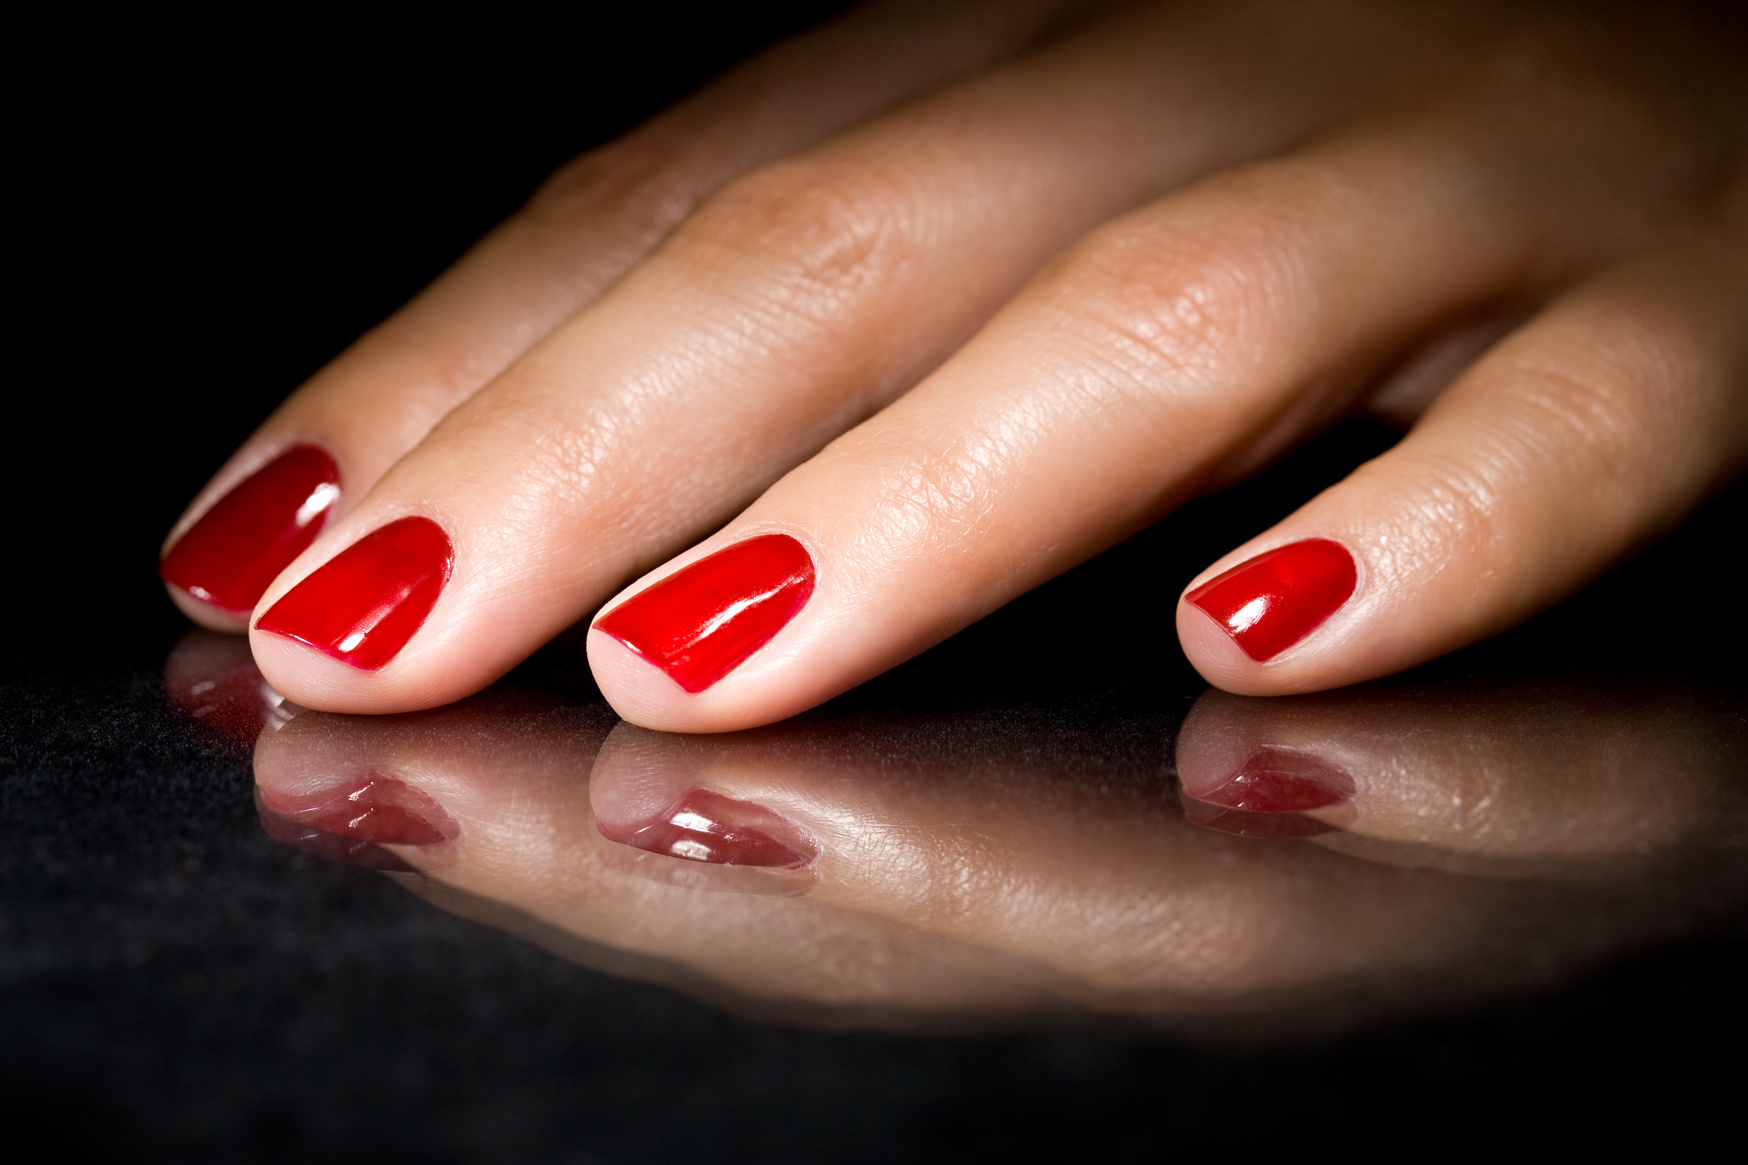 Red polish nails